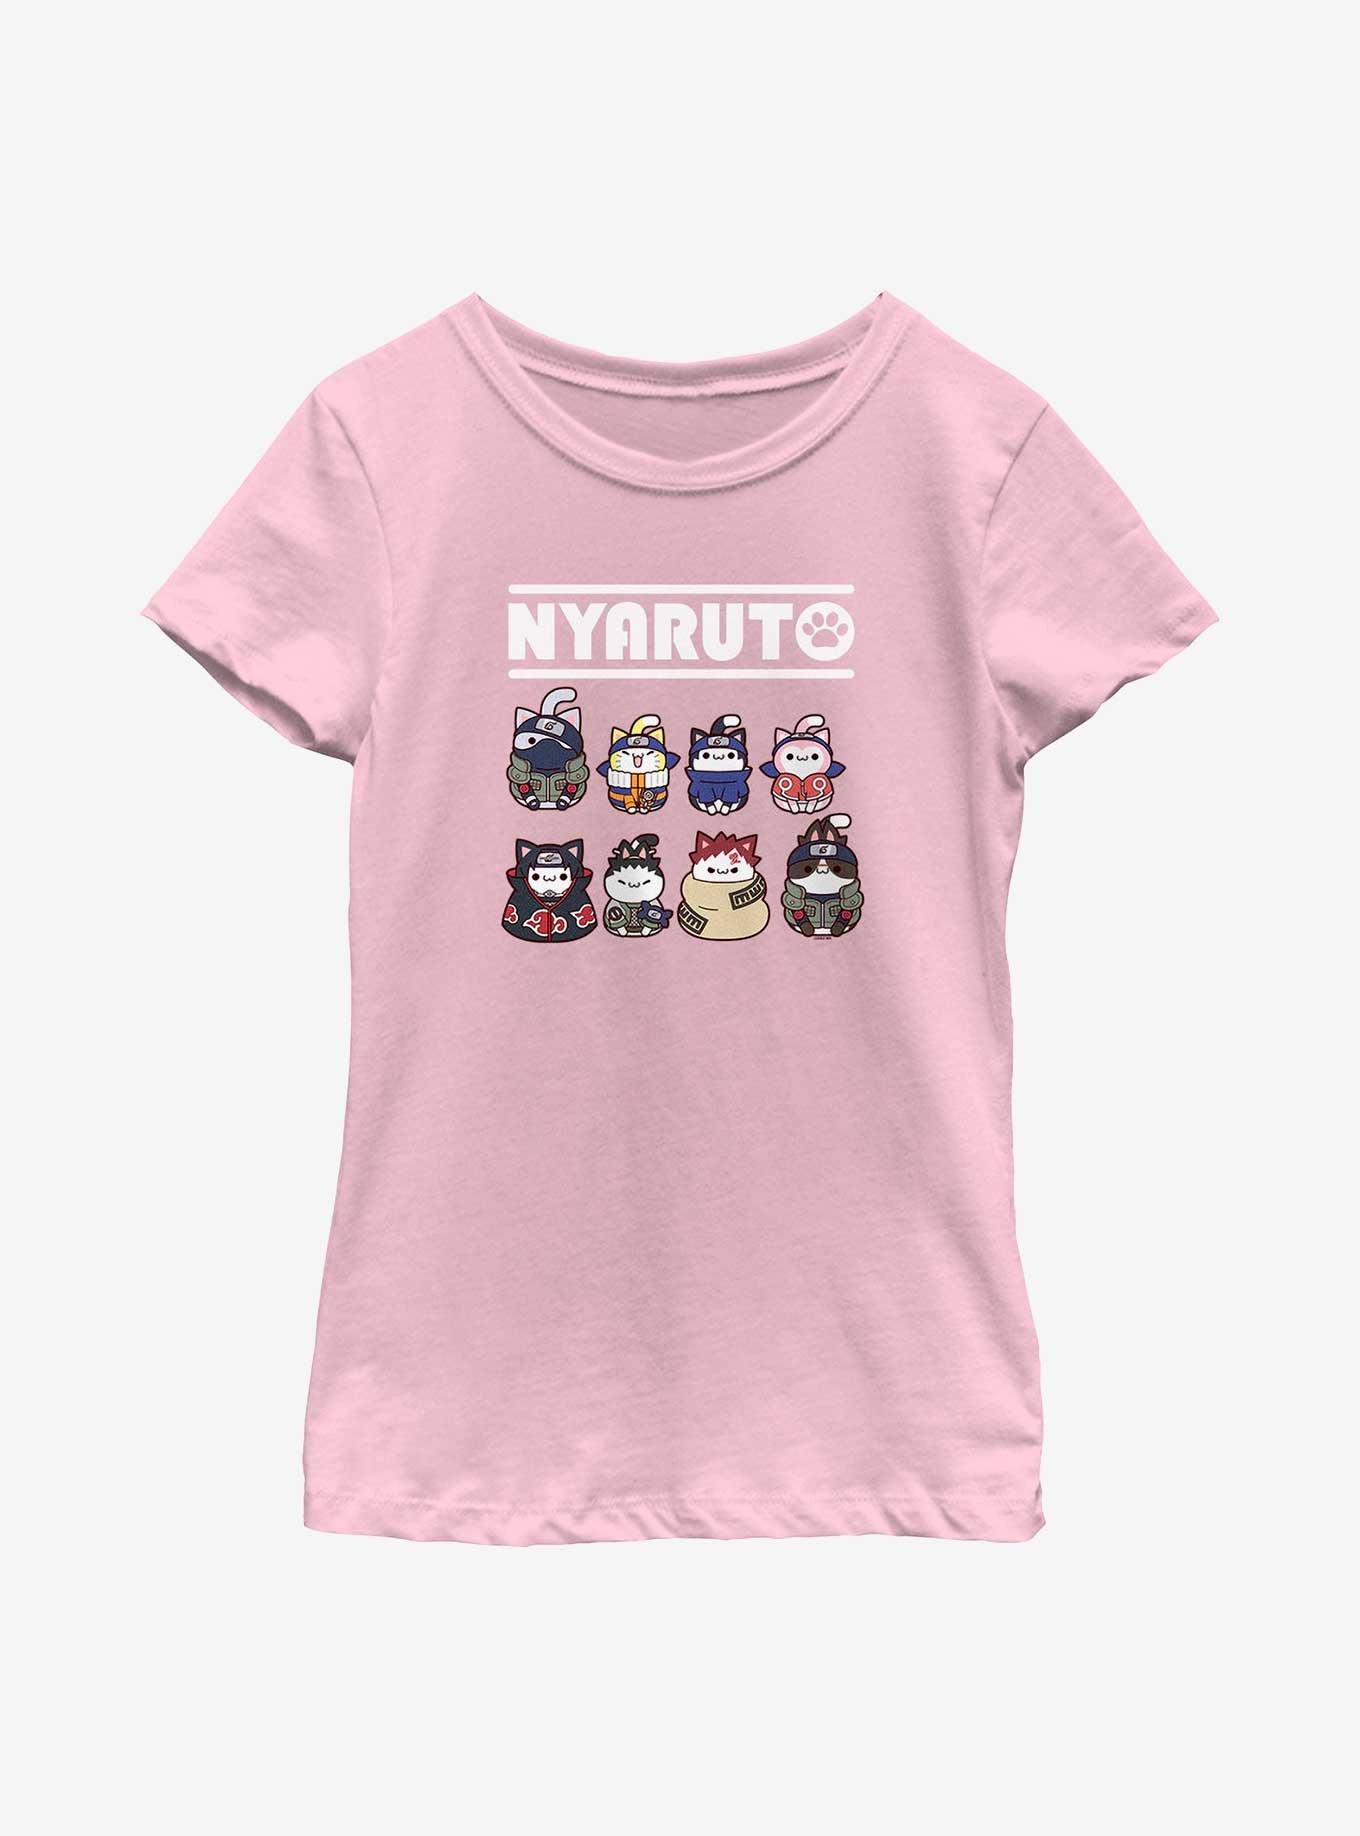 A Cat Suki - Naruto T-Shirt by VP021 - The Shirt List